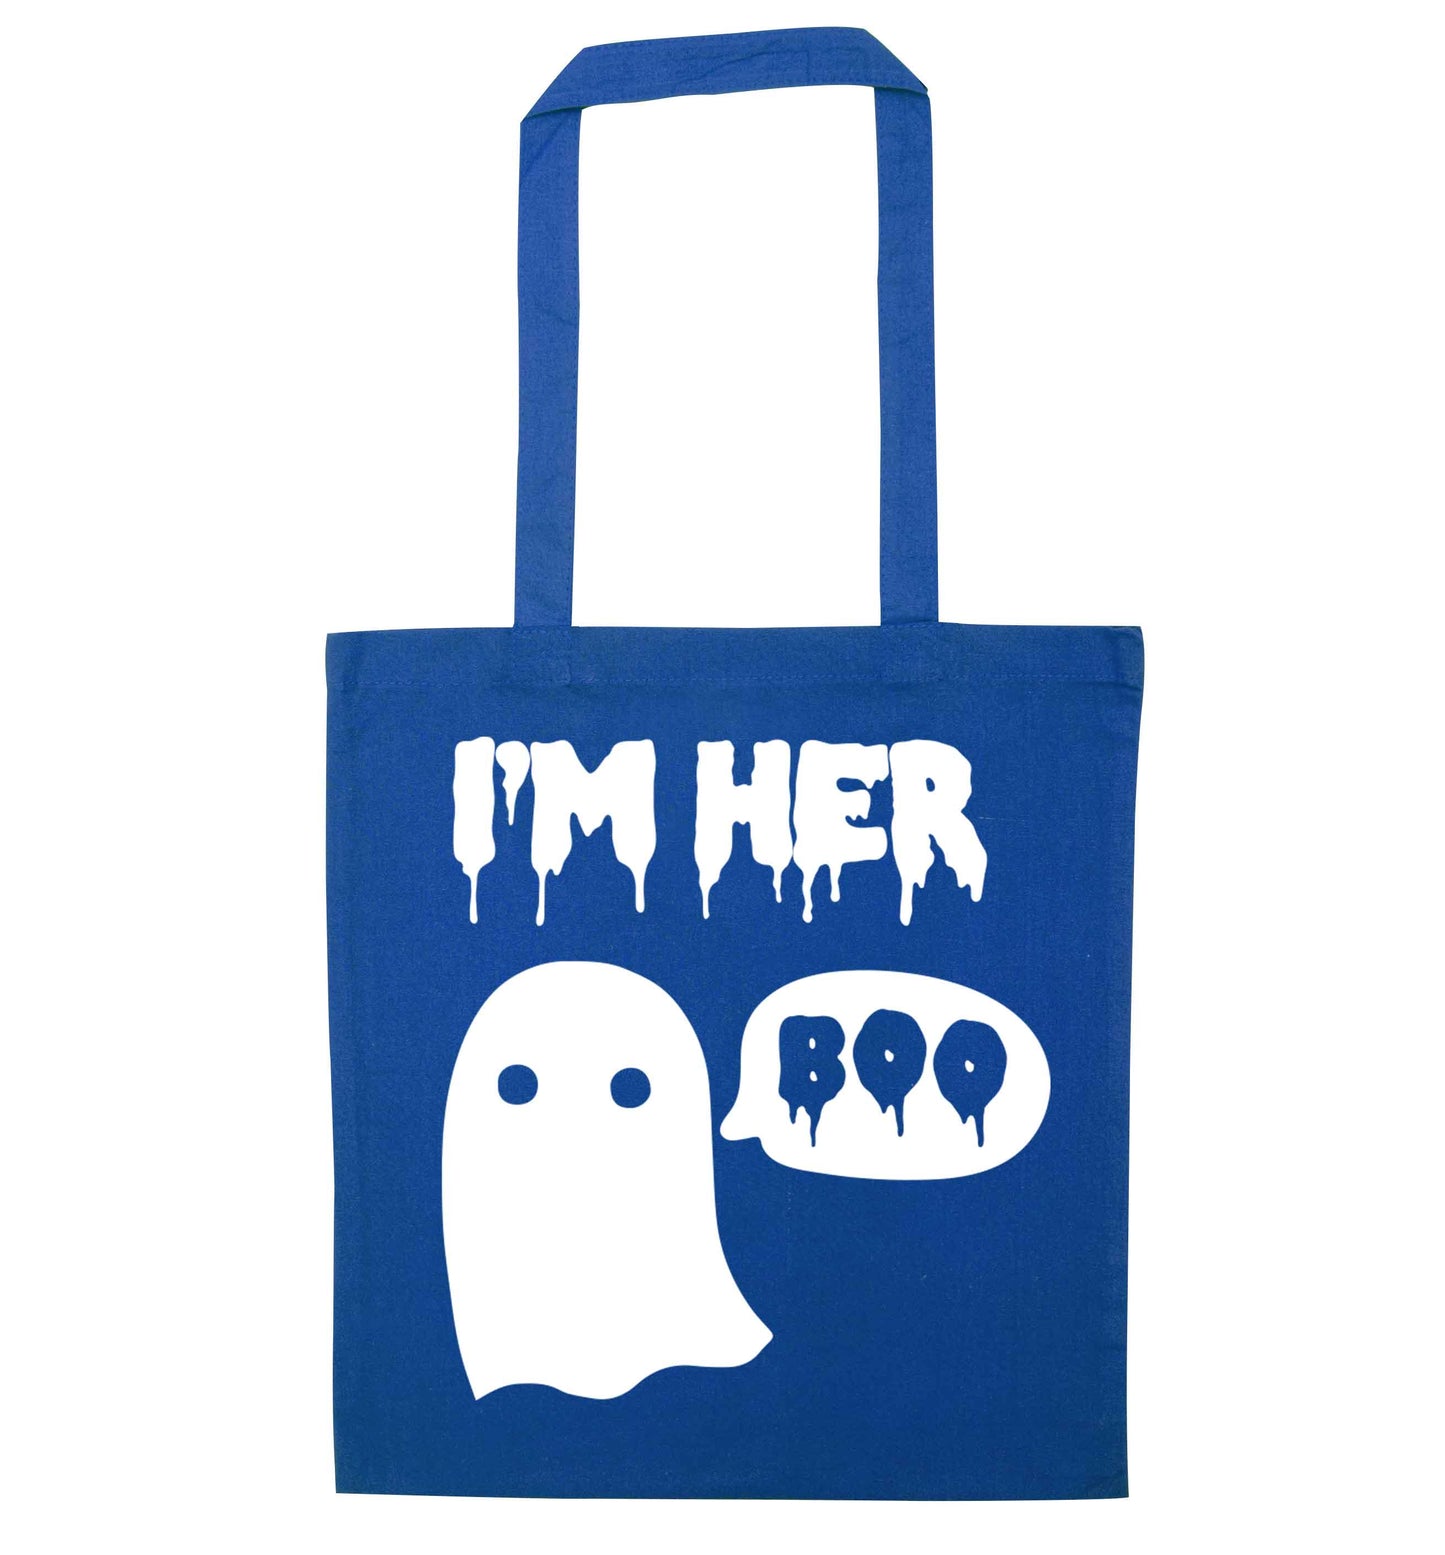 I'm her boo blue tote bag